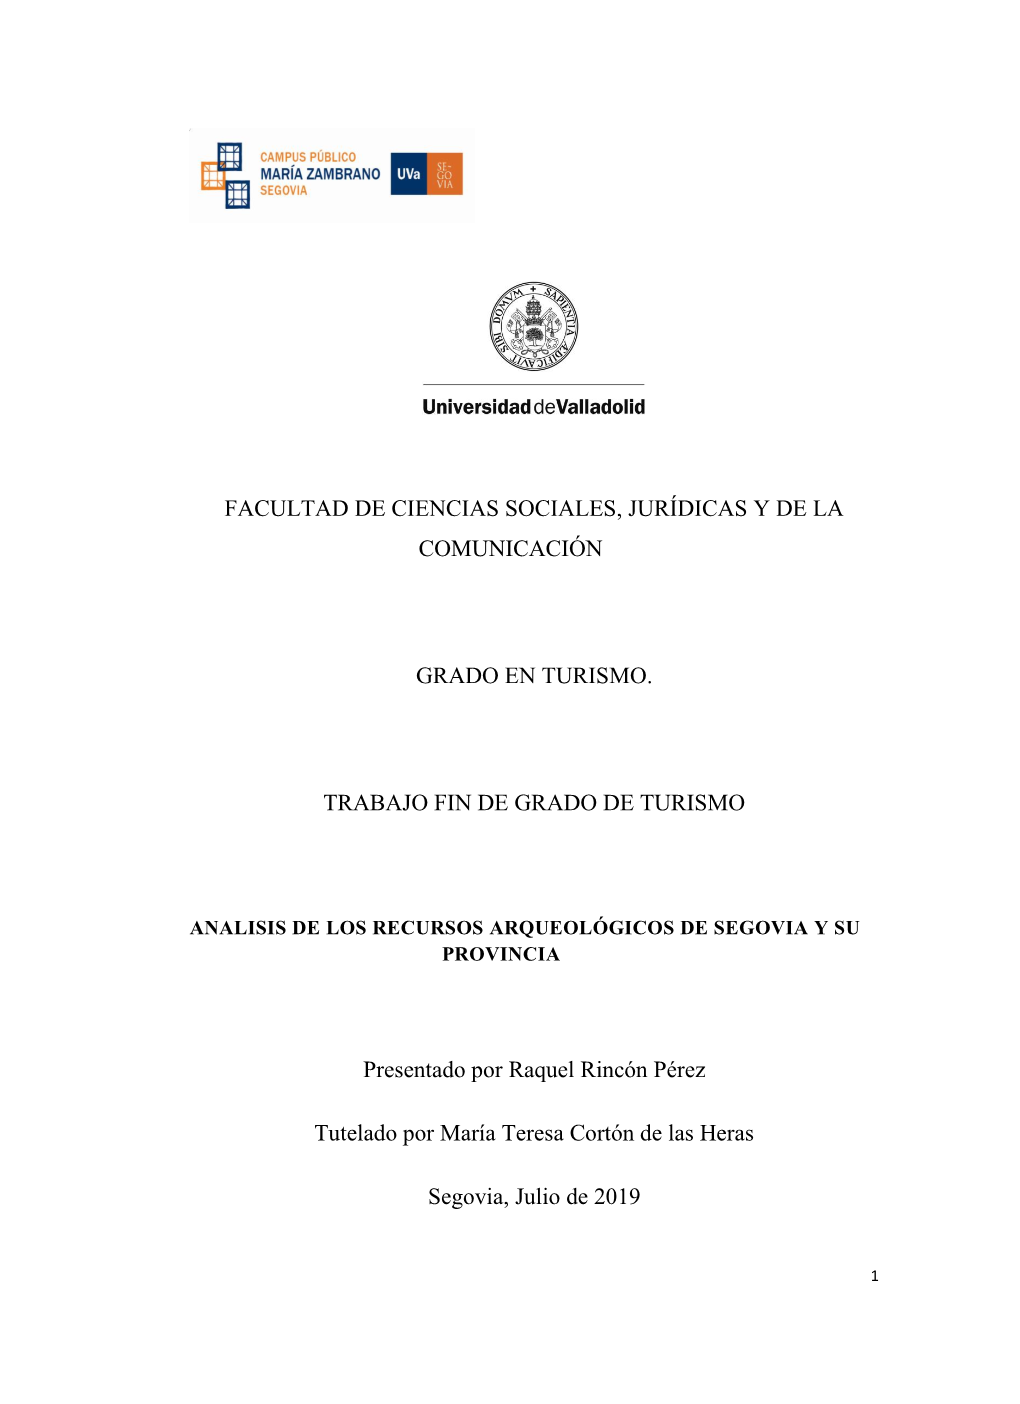 Analisis De Los Recursos Arqueológicos De Segovia Y Su Provincia